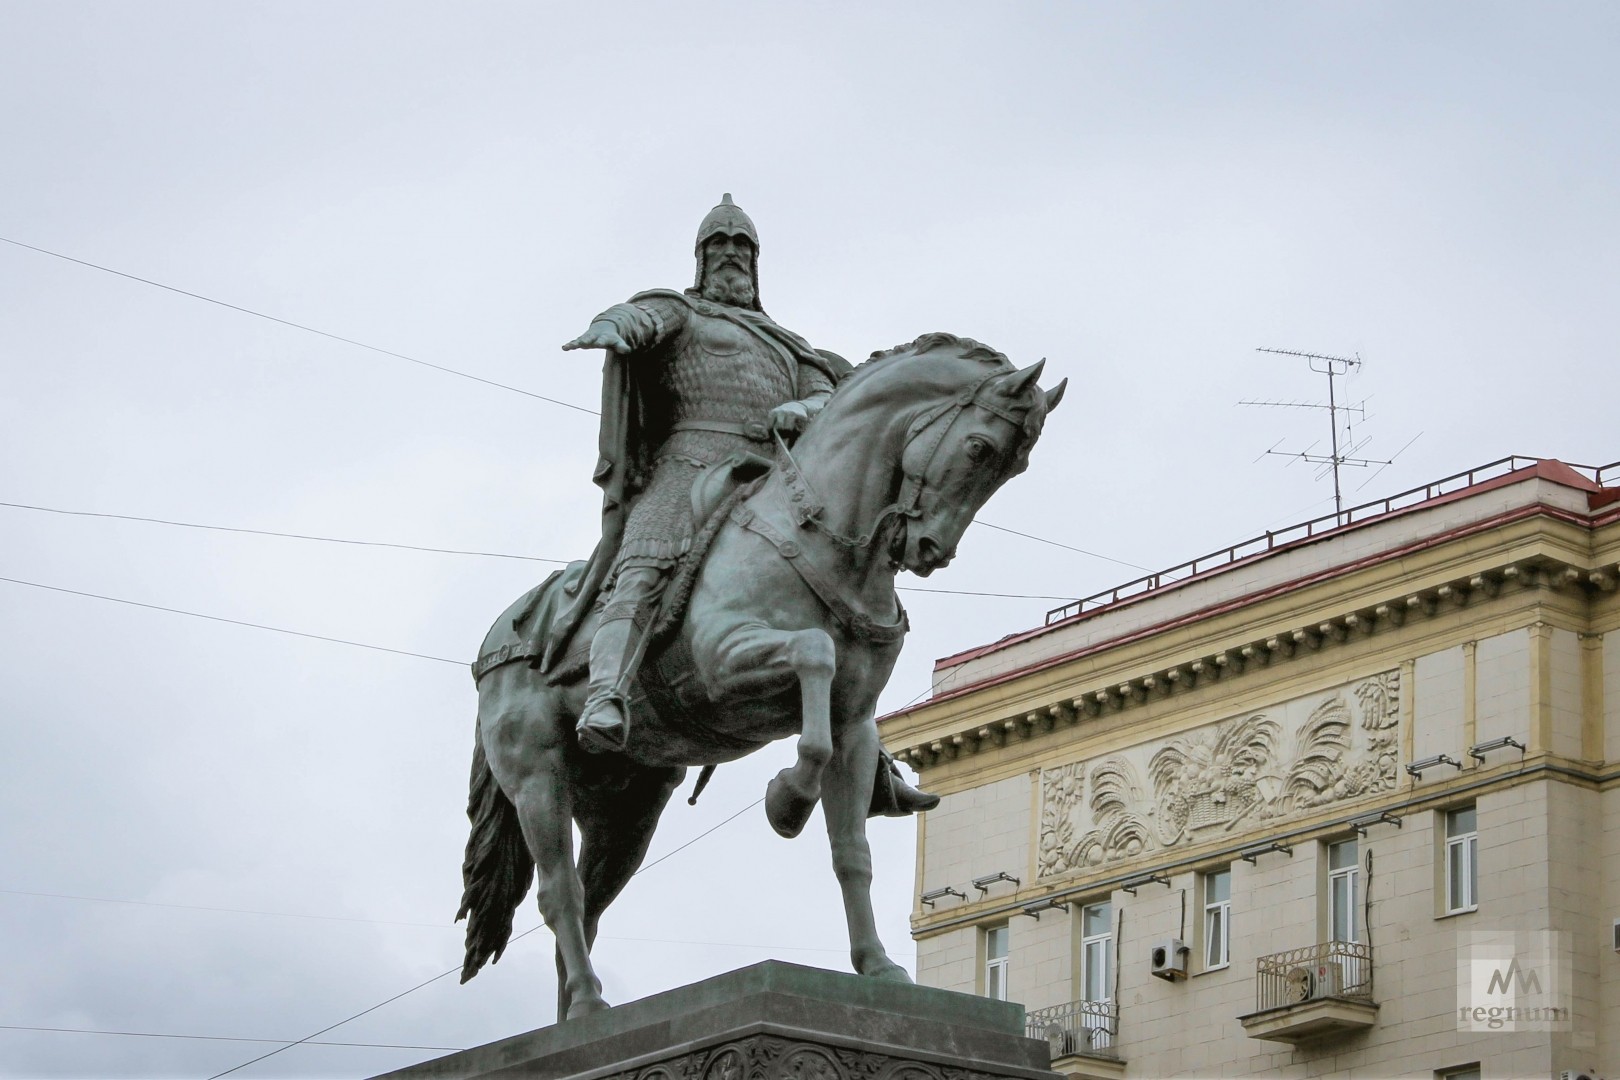 Памятник юрию долгорукому в москве фото